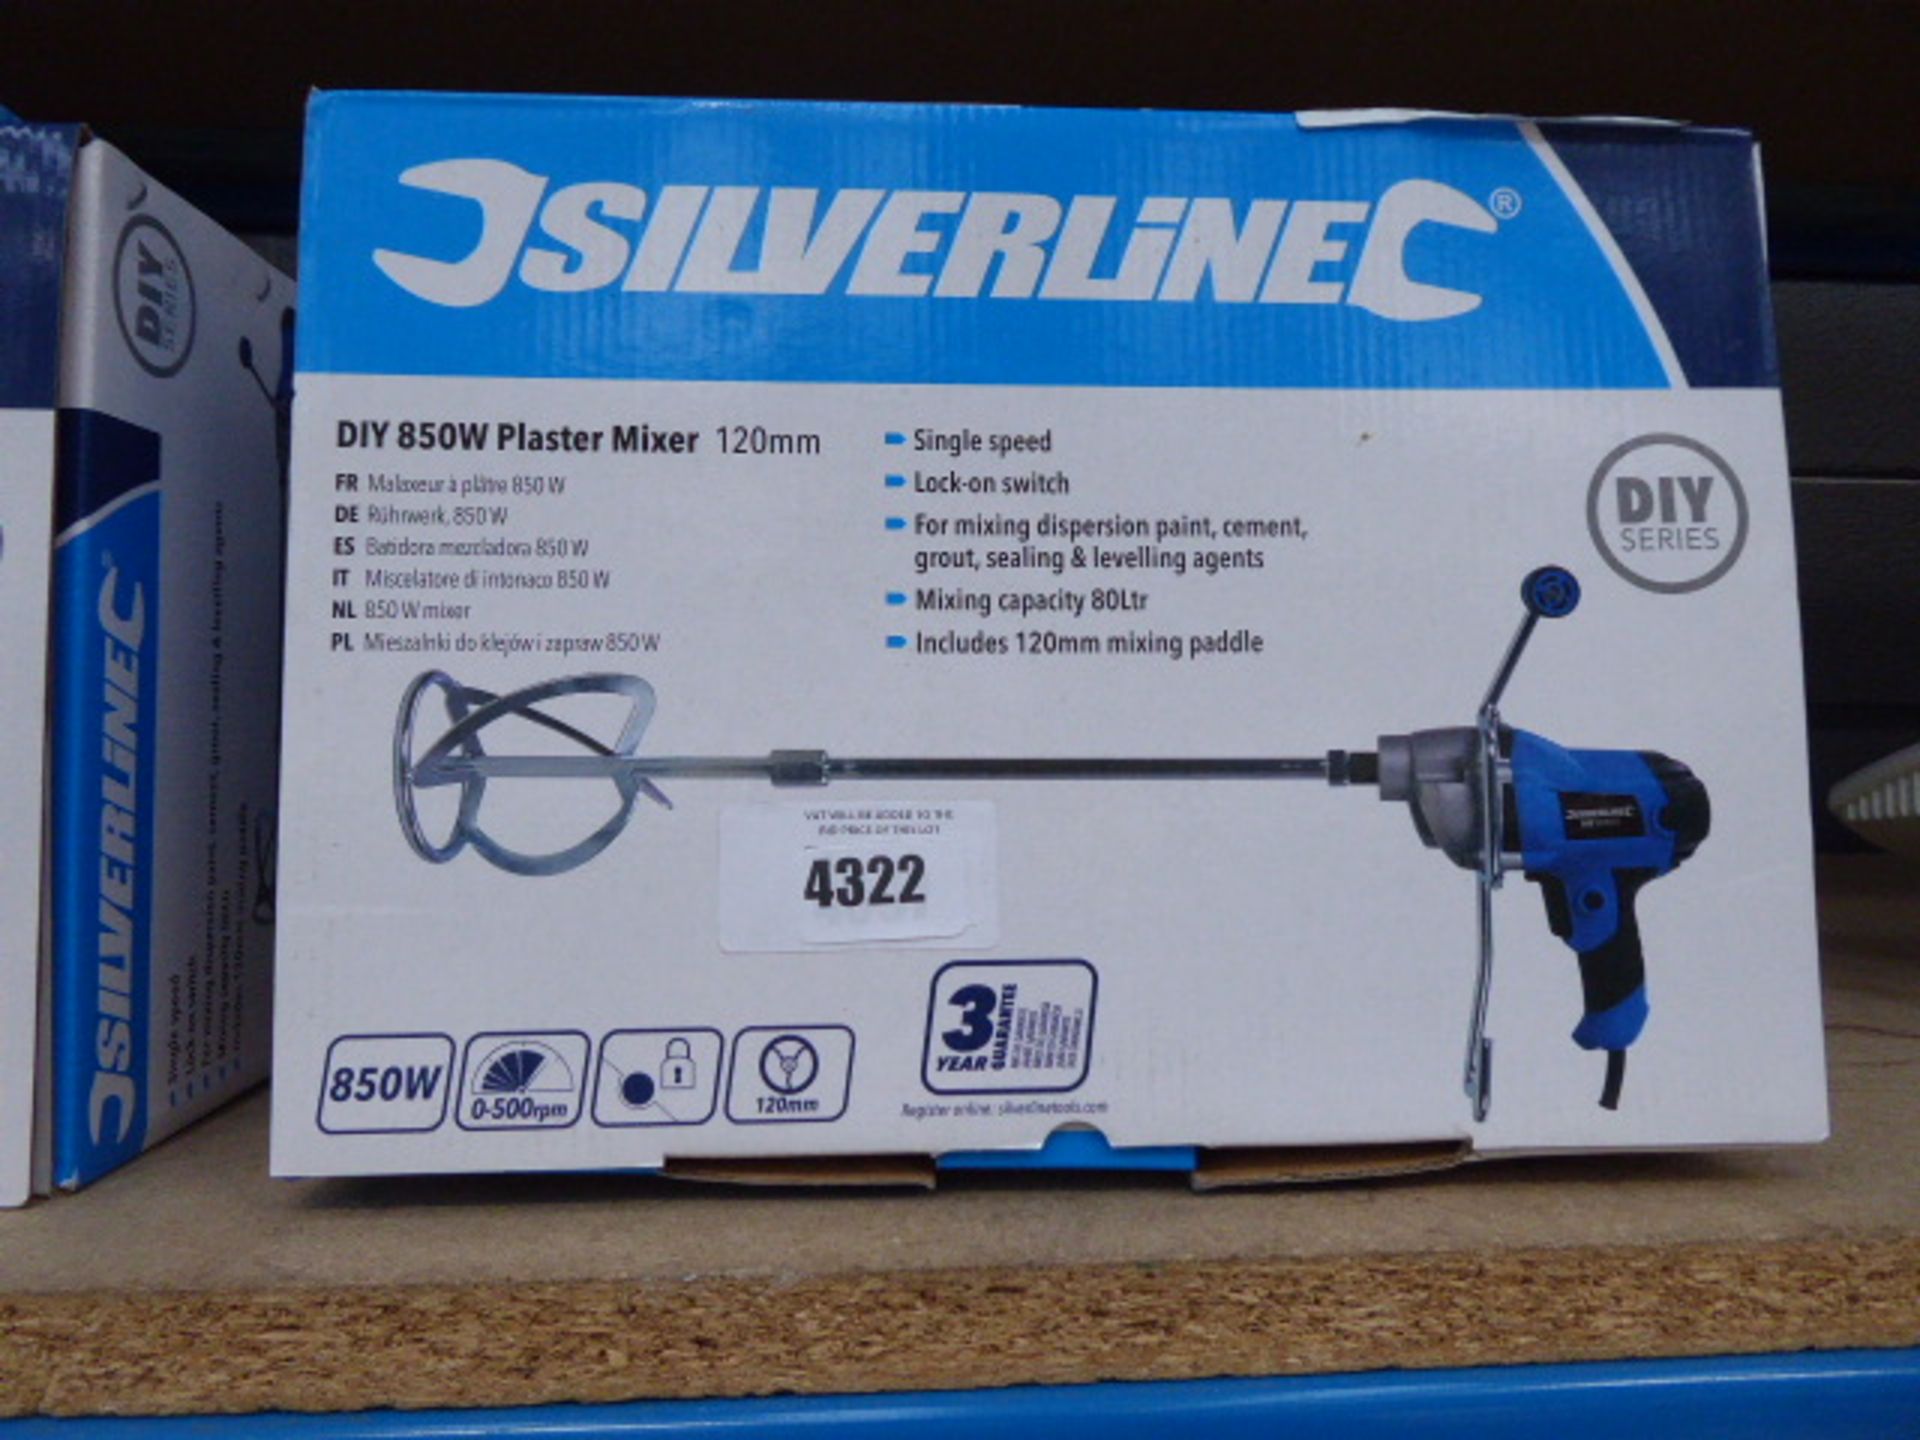 4397 Silverline 850w plaster mixer